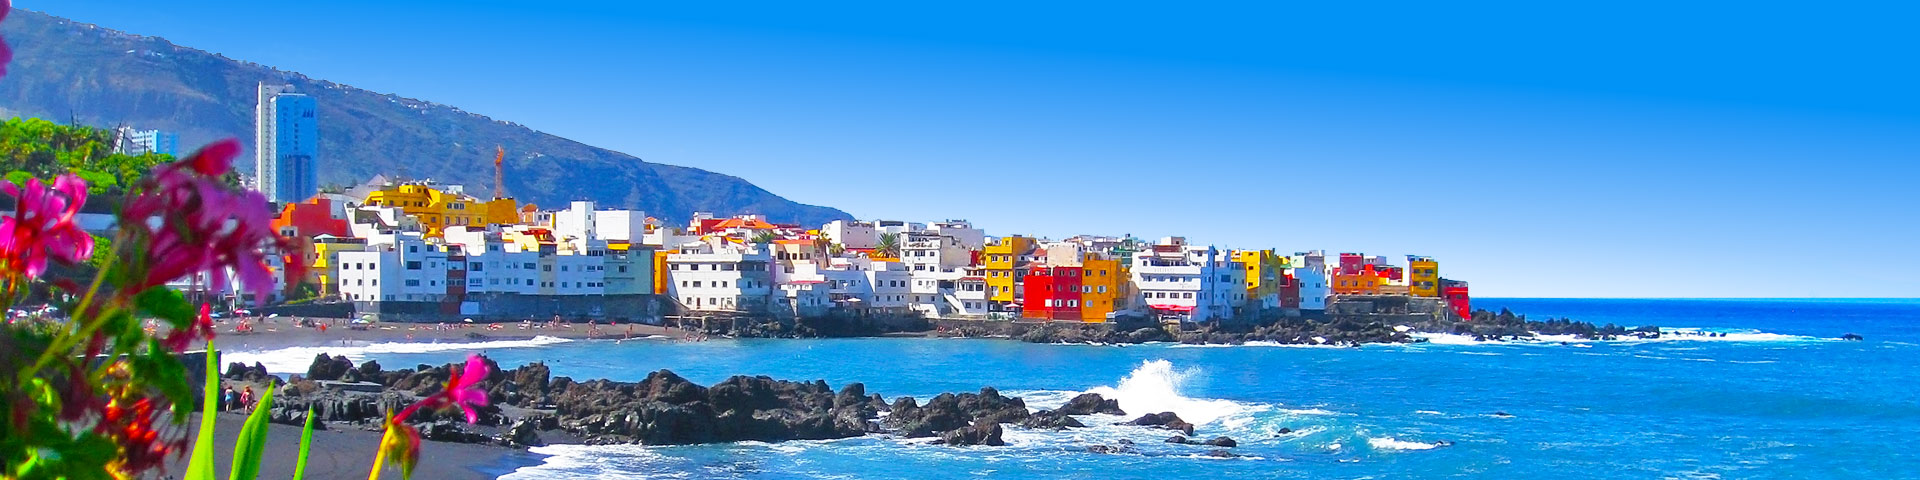 Zwart zandstand met gekleurde huisjes Puerto de la Cruz